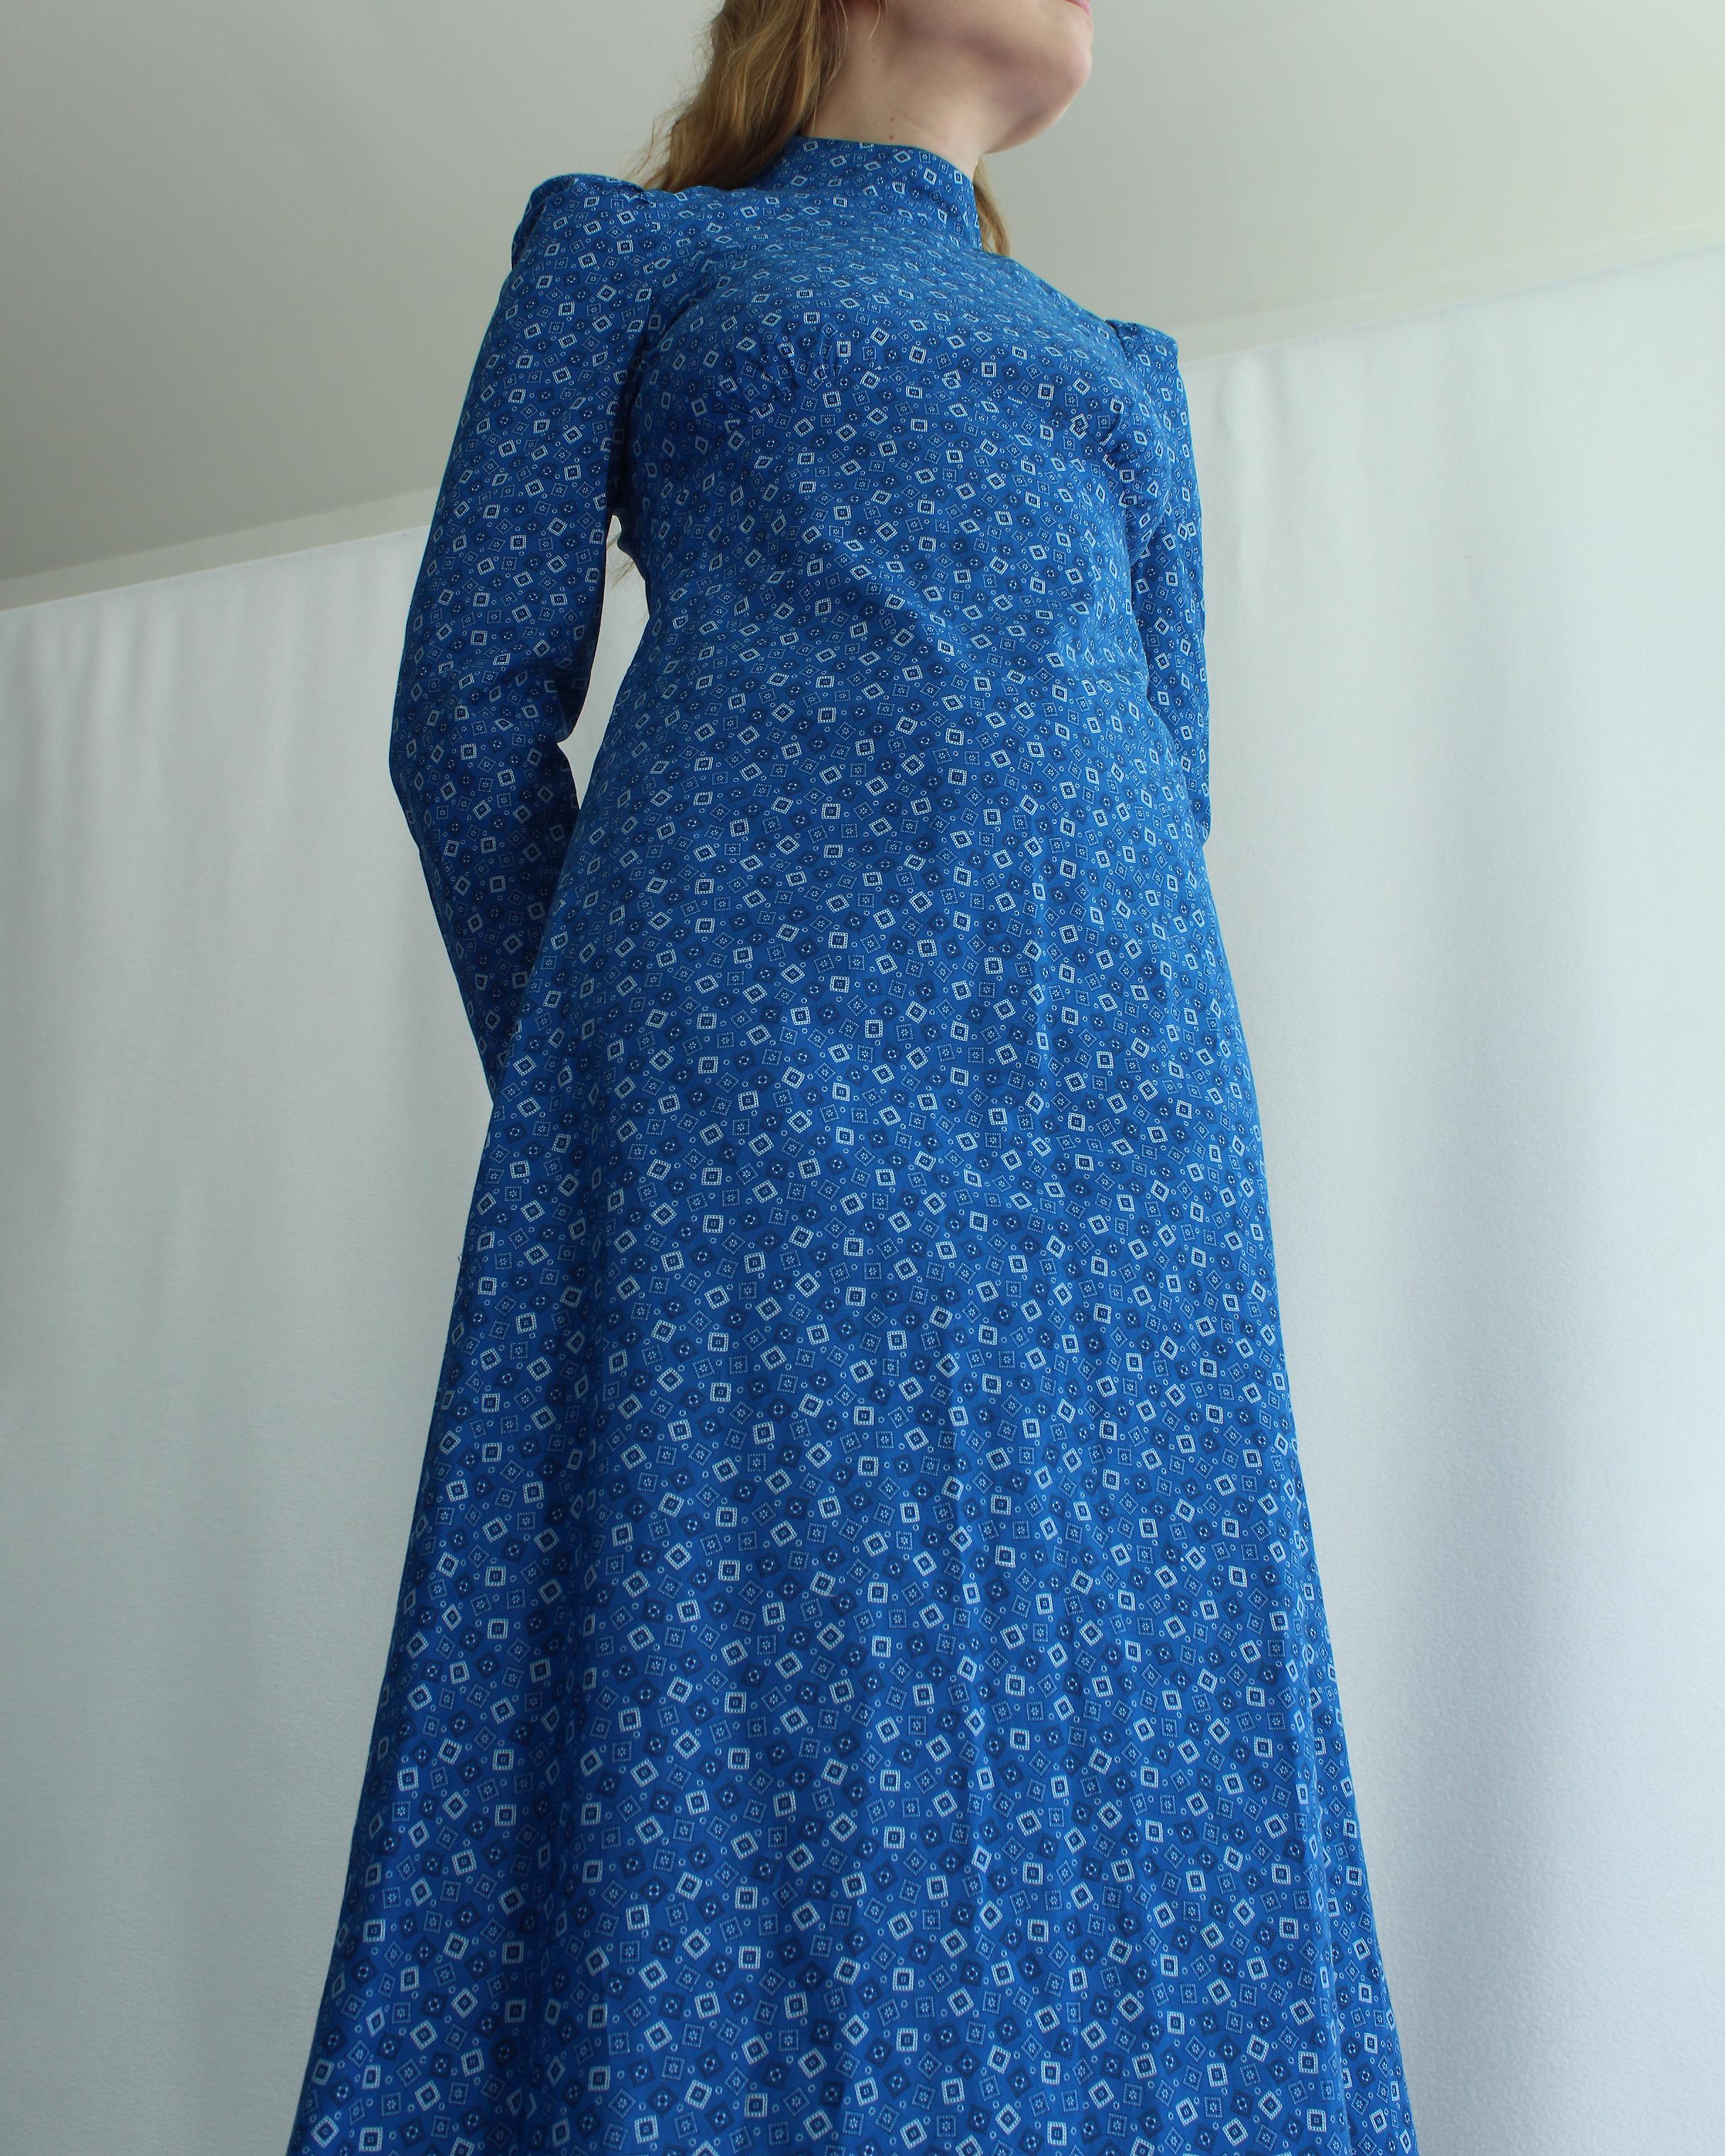 VERY BREEZY présente : Cette robe vintage deadstock des années 1960 en calicot cobalt s'inspire des robes d'emballage victoriennes, créant un look bohème romantique. Elle est dotée d'une encolure fantaisie et d'une taille empire, ce qui serait